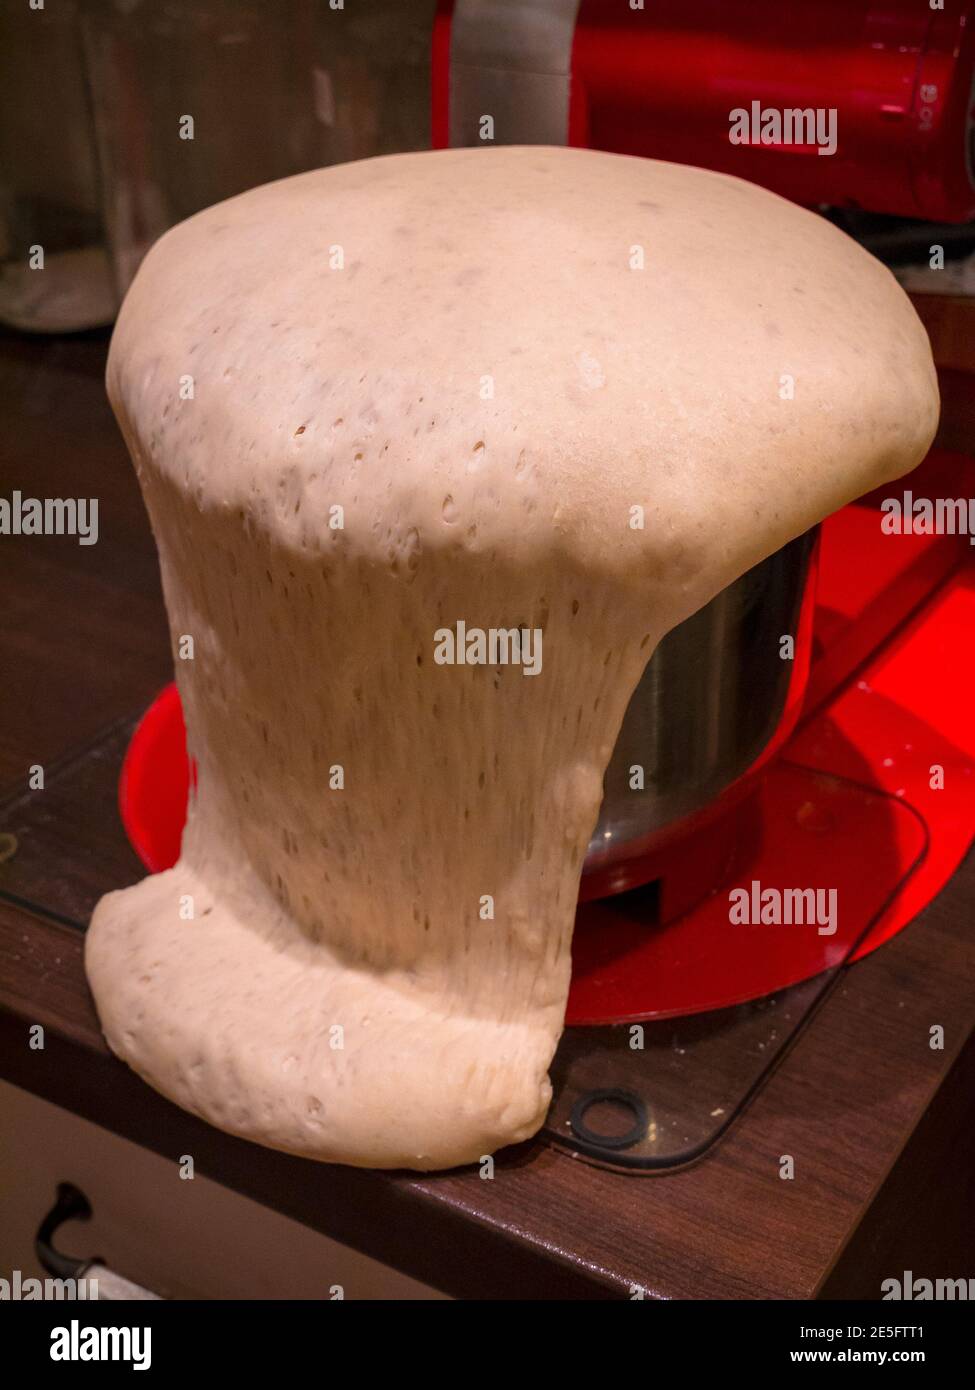 Teig überläuft aus der Schüssel, die auf Glasmatte auf Holztisch steht. Im Hintergrund ist der Küchenroboter und das rote Pad zu sehen. Stockfoto